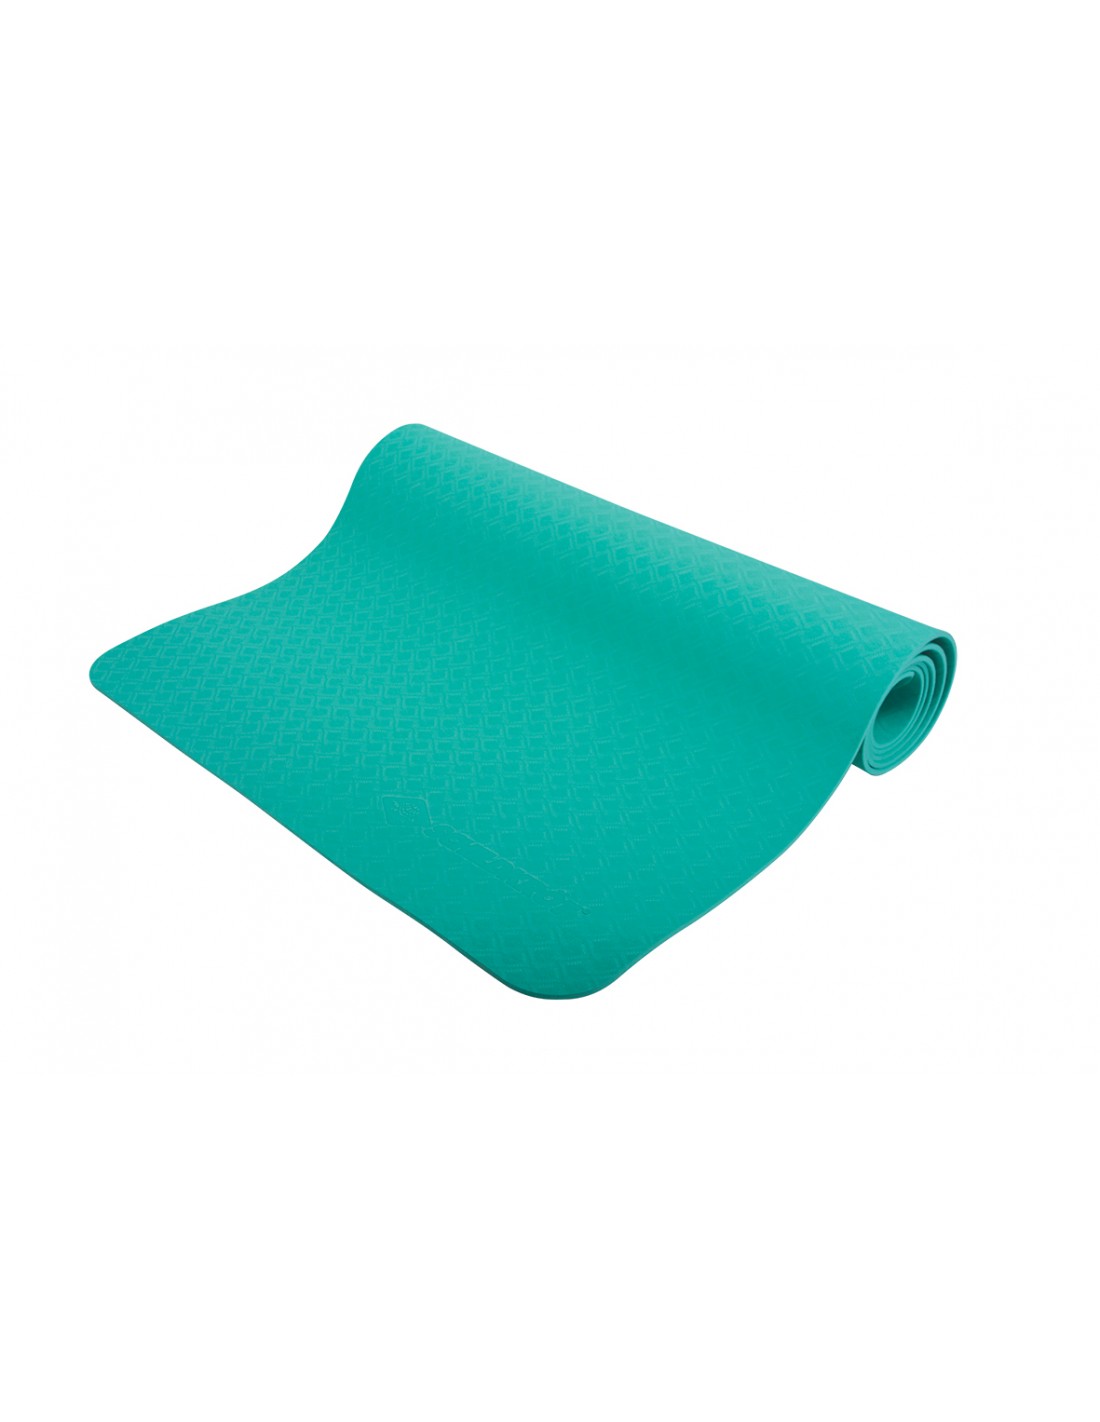 Schildkröt TPE Yogamatte, Grün, 4mm, PVC-frei, im Carrybag von Schildkröt Fitness